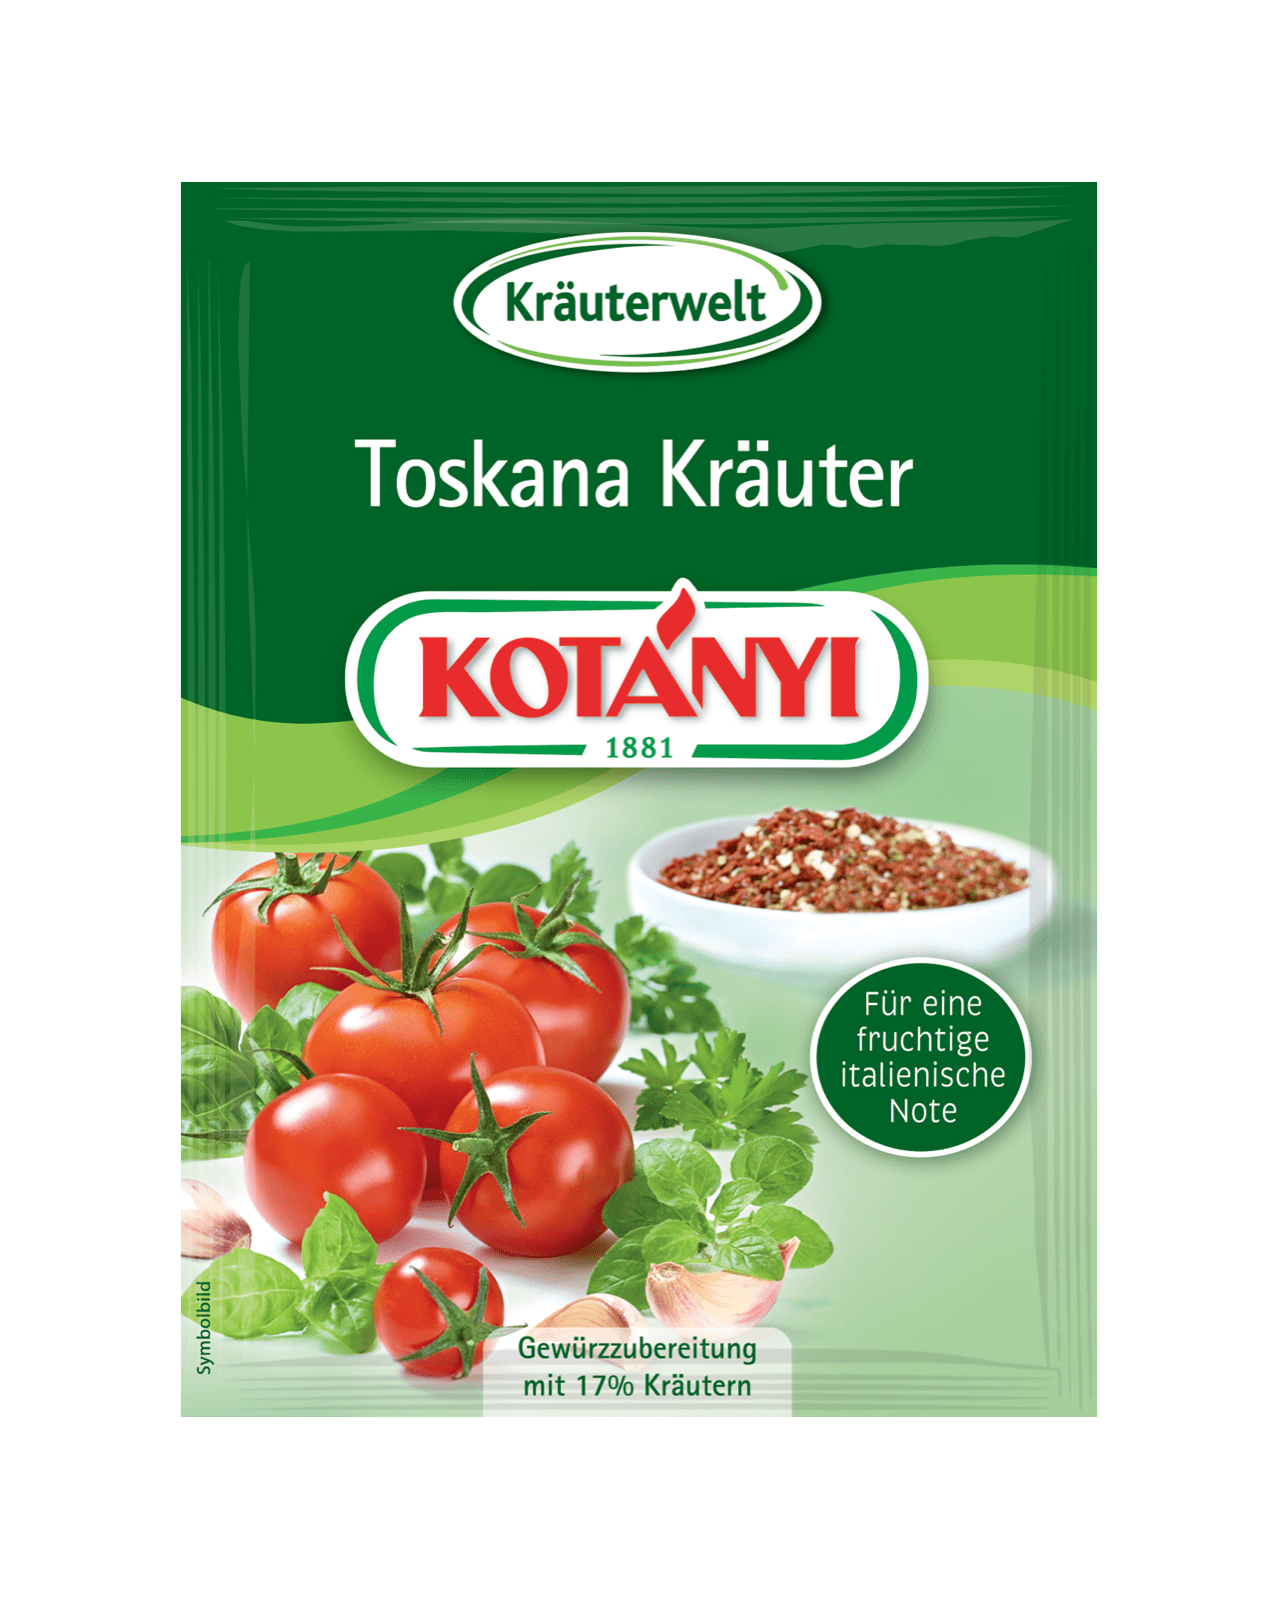 Kotányi Toskana Kräuter in der Briefpackung